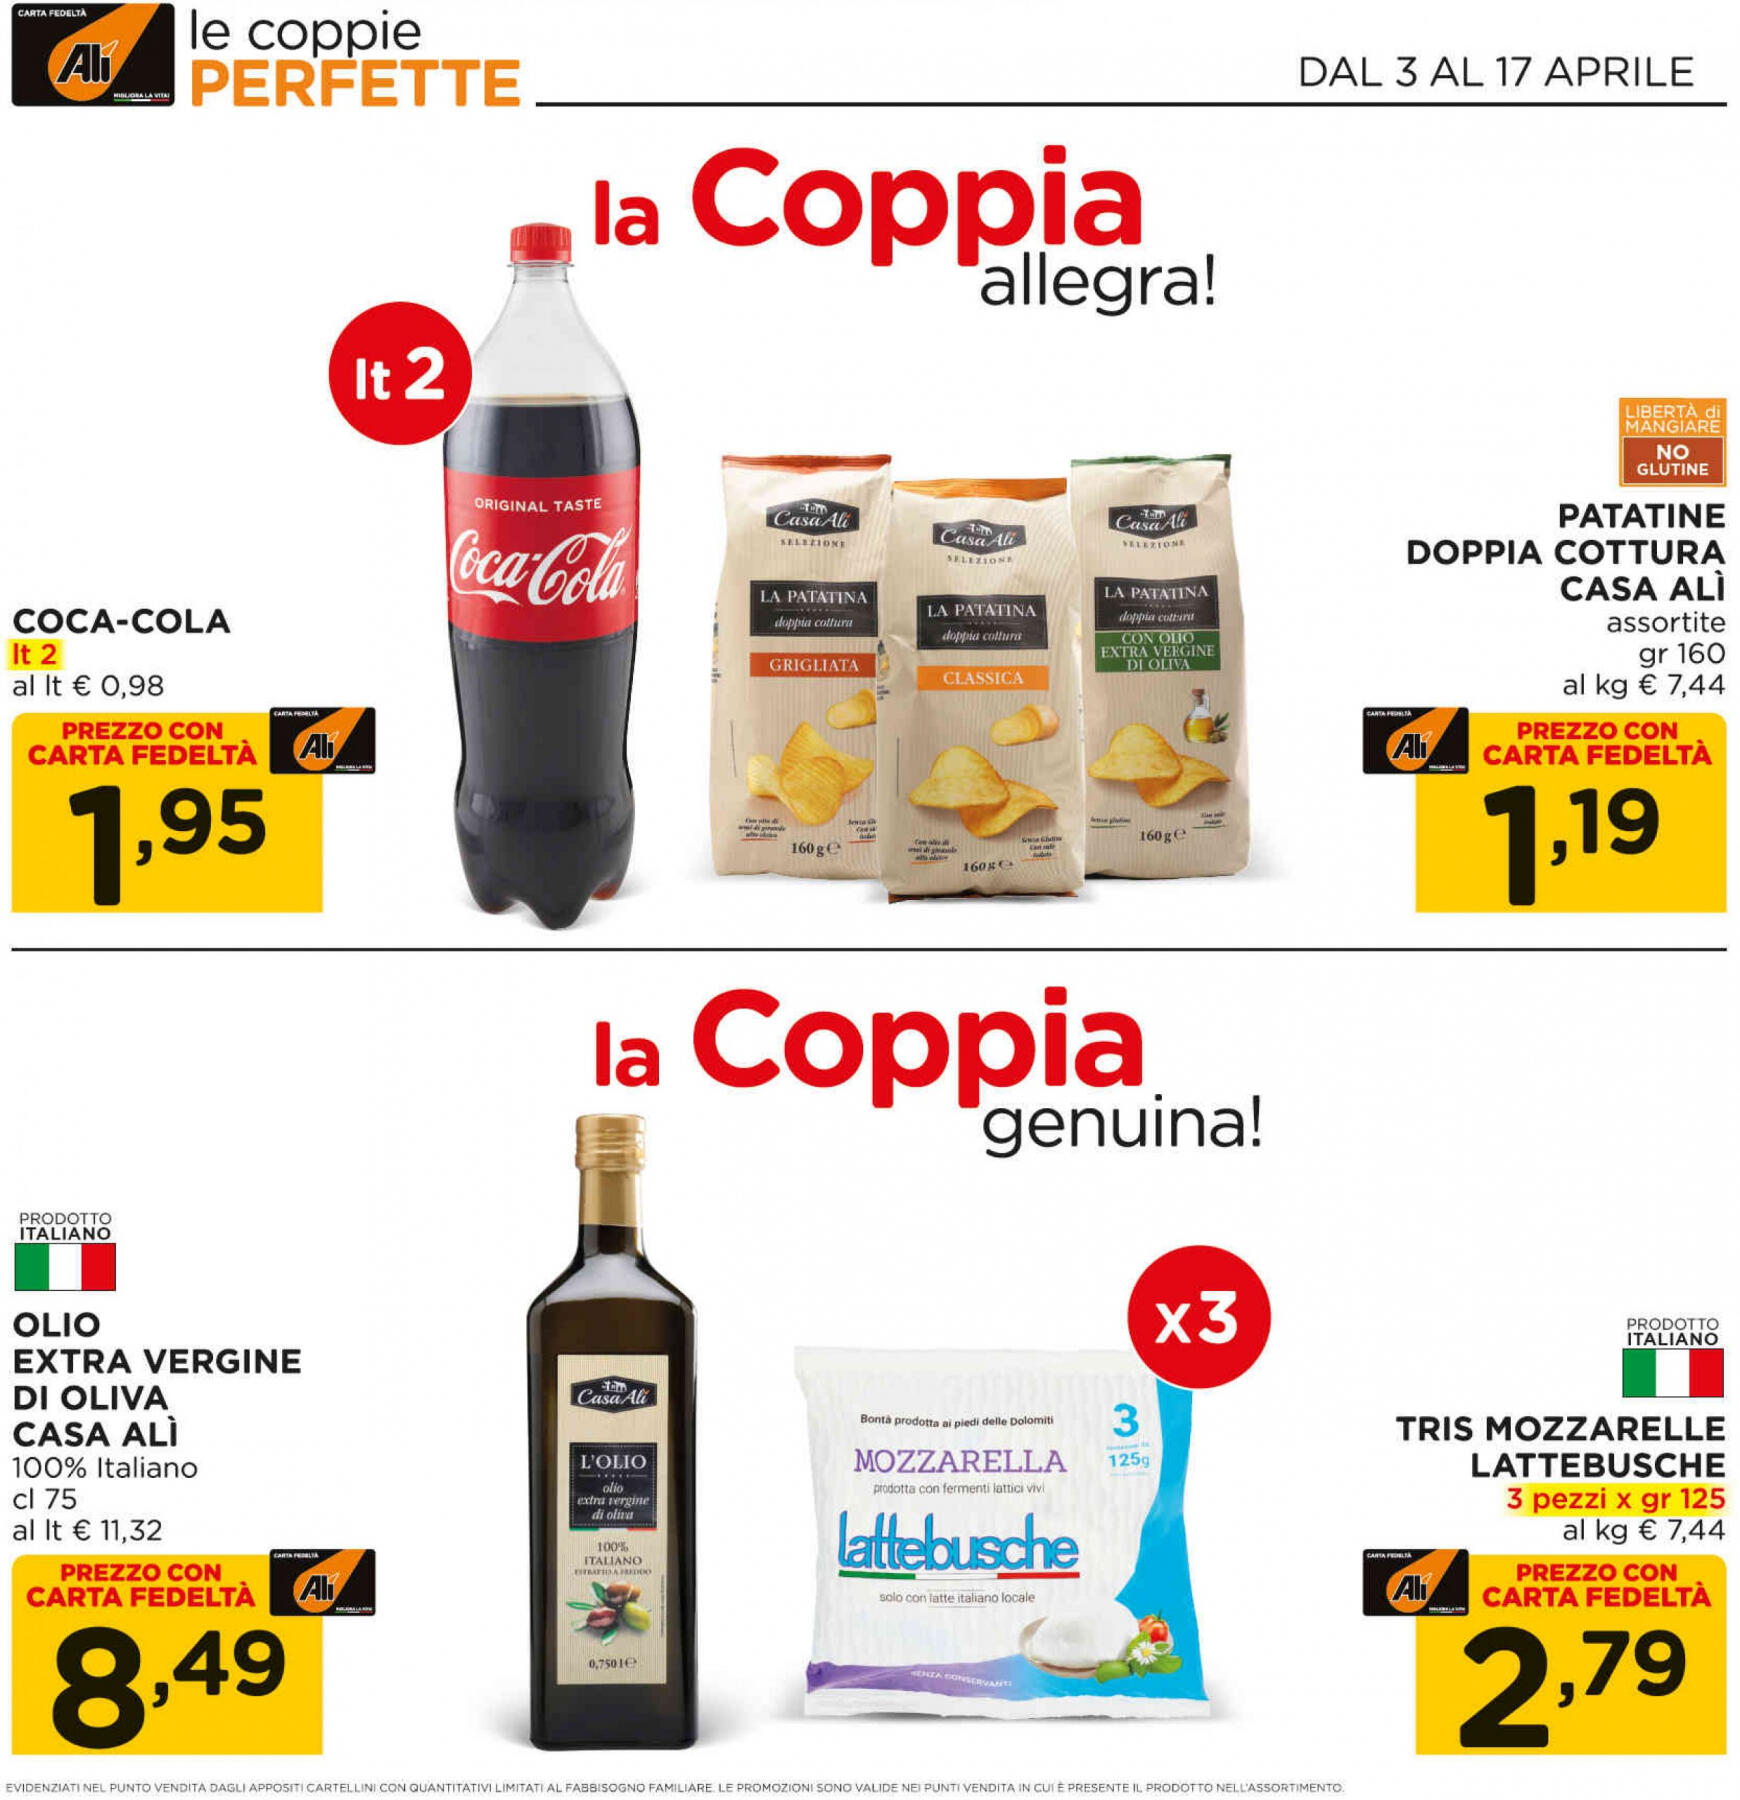 ali-aliper - Nuovo volantino Ali - Aliper - Coppie online 03.04. - 17.04. - page: 3